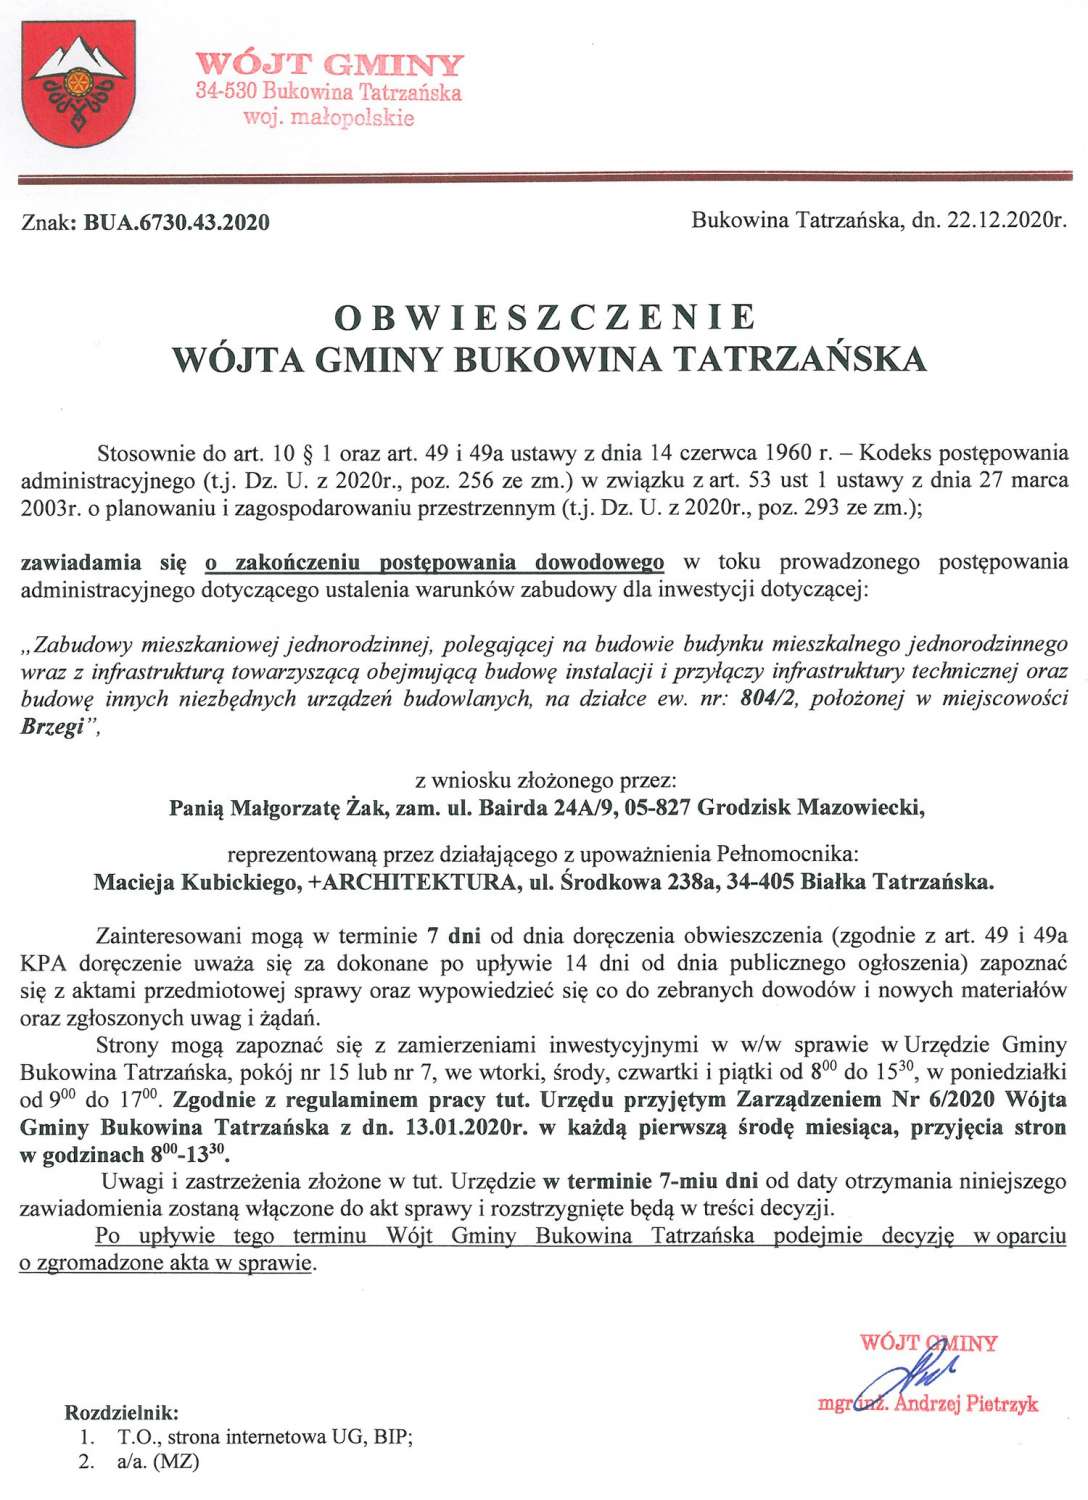 Obwieszczenie Wójta Gminy Bukowina Tatrzańska BUA 6730.43.2020